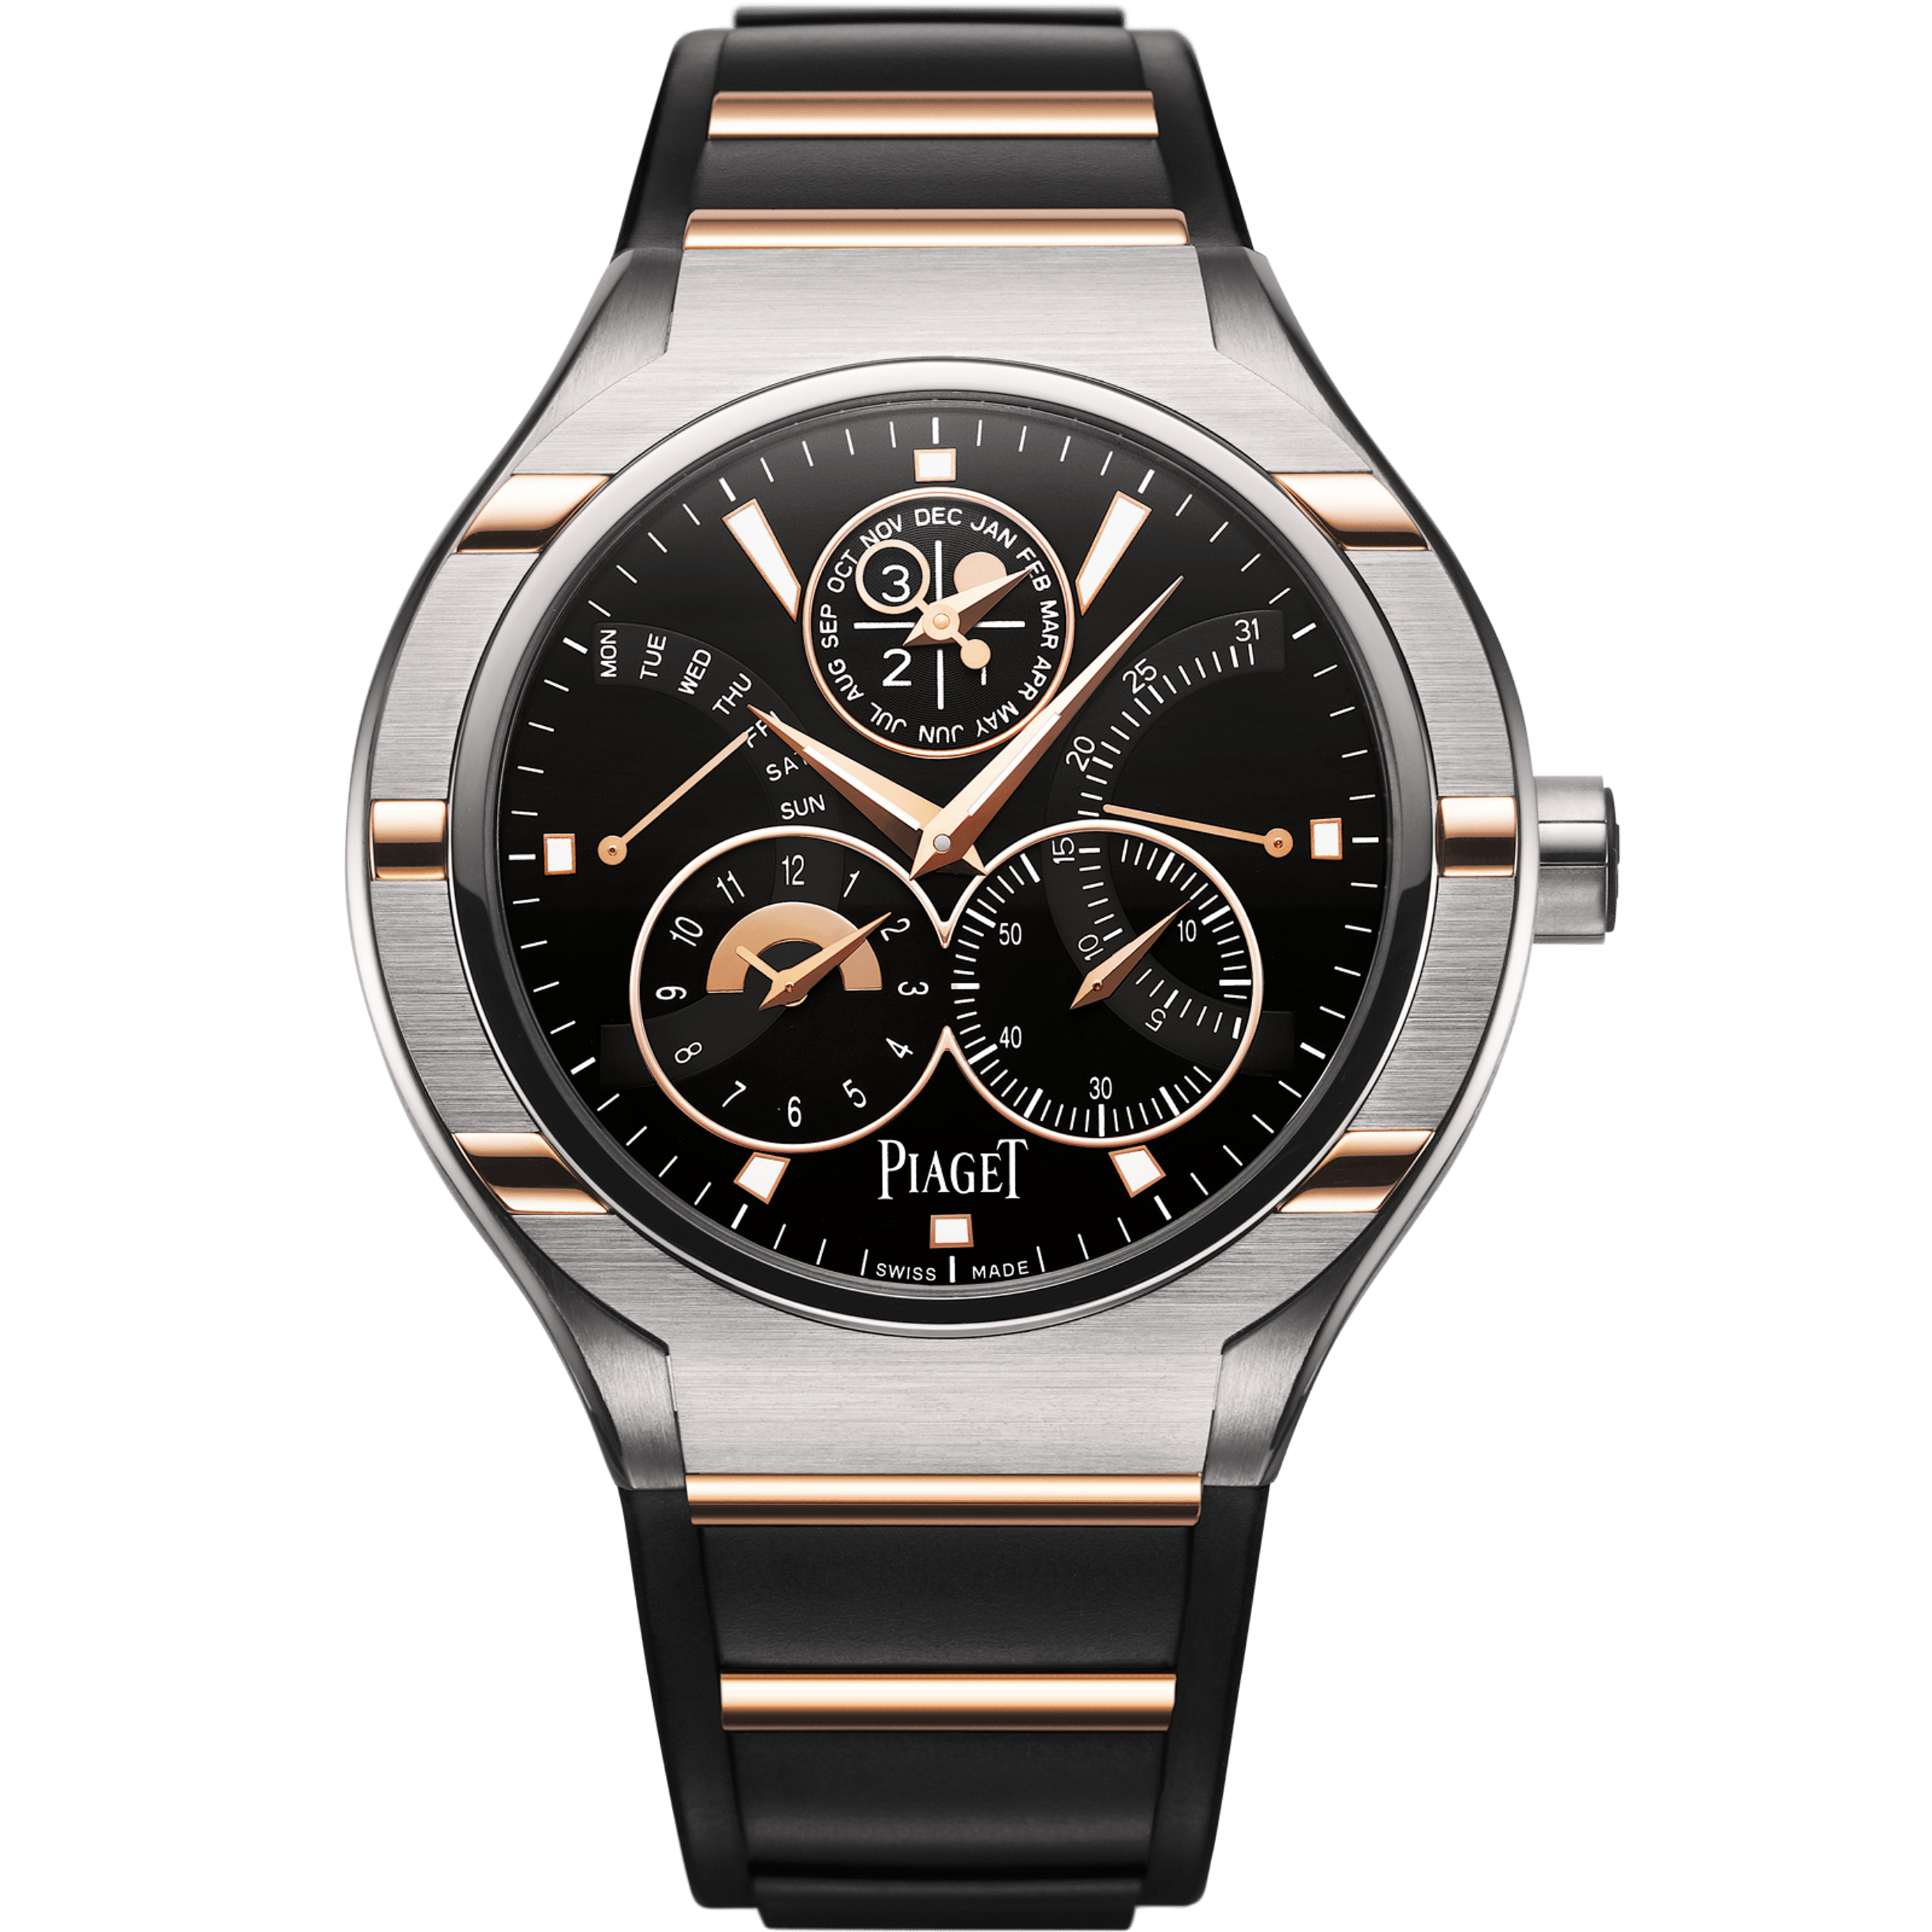 Piaget Perpetual Calendar Watch G0A36001